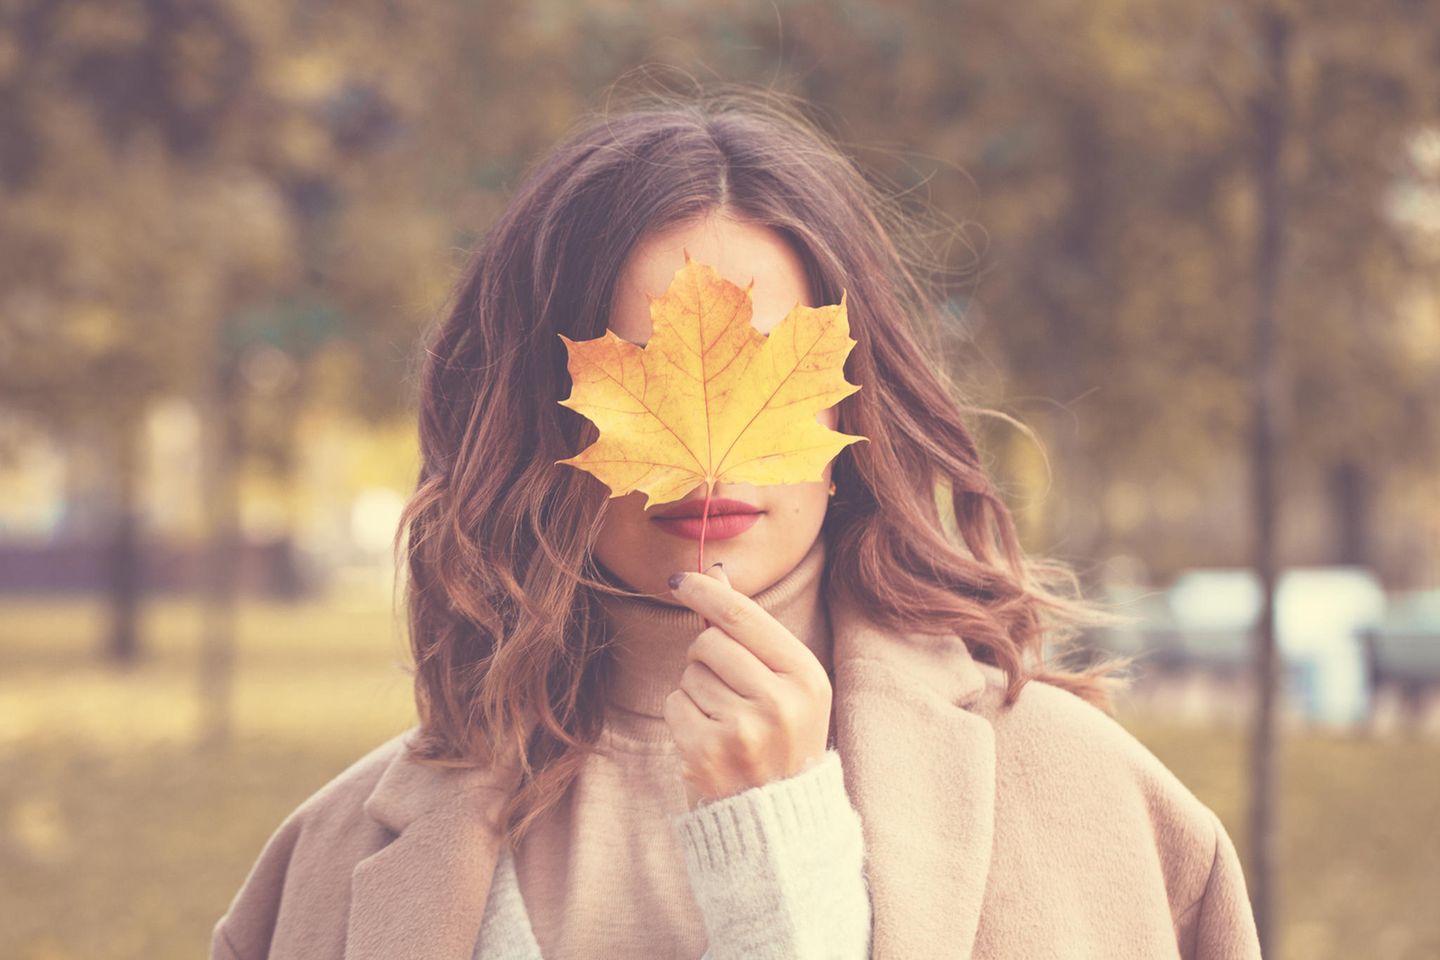 Das sagt Ihre liebste Jahreszeit über Ihren Charakter aus: Frau im Herbst mit Laub vor dem Gesicht.